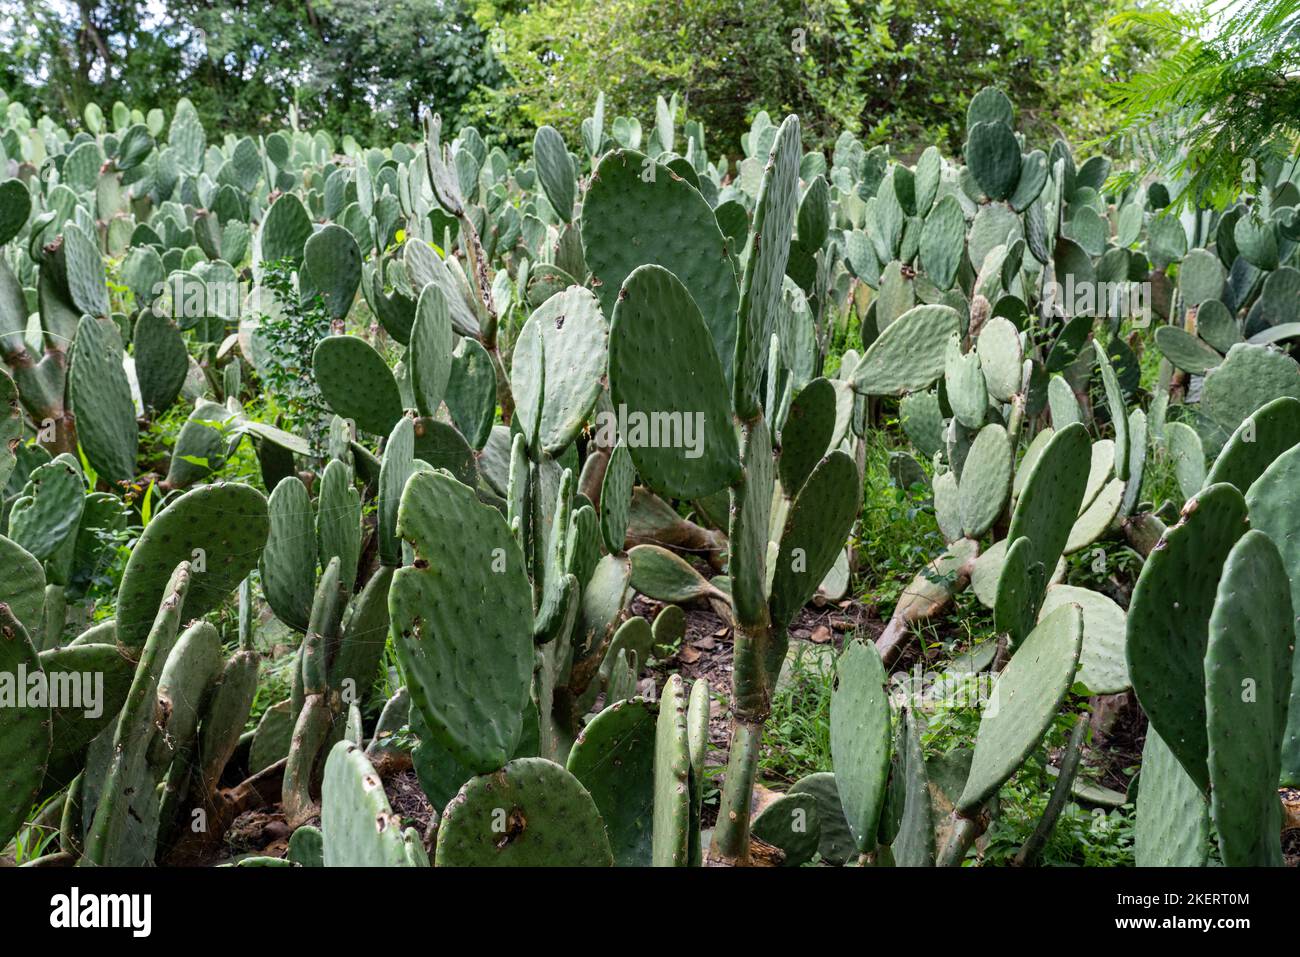 Champ de cactus nopal utilisé pour la culture d'insectes cochenille pour la fabrication de colorants cochenille naturels pour les textiles. Oaxaca, Mexique. Banque D'Images